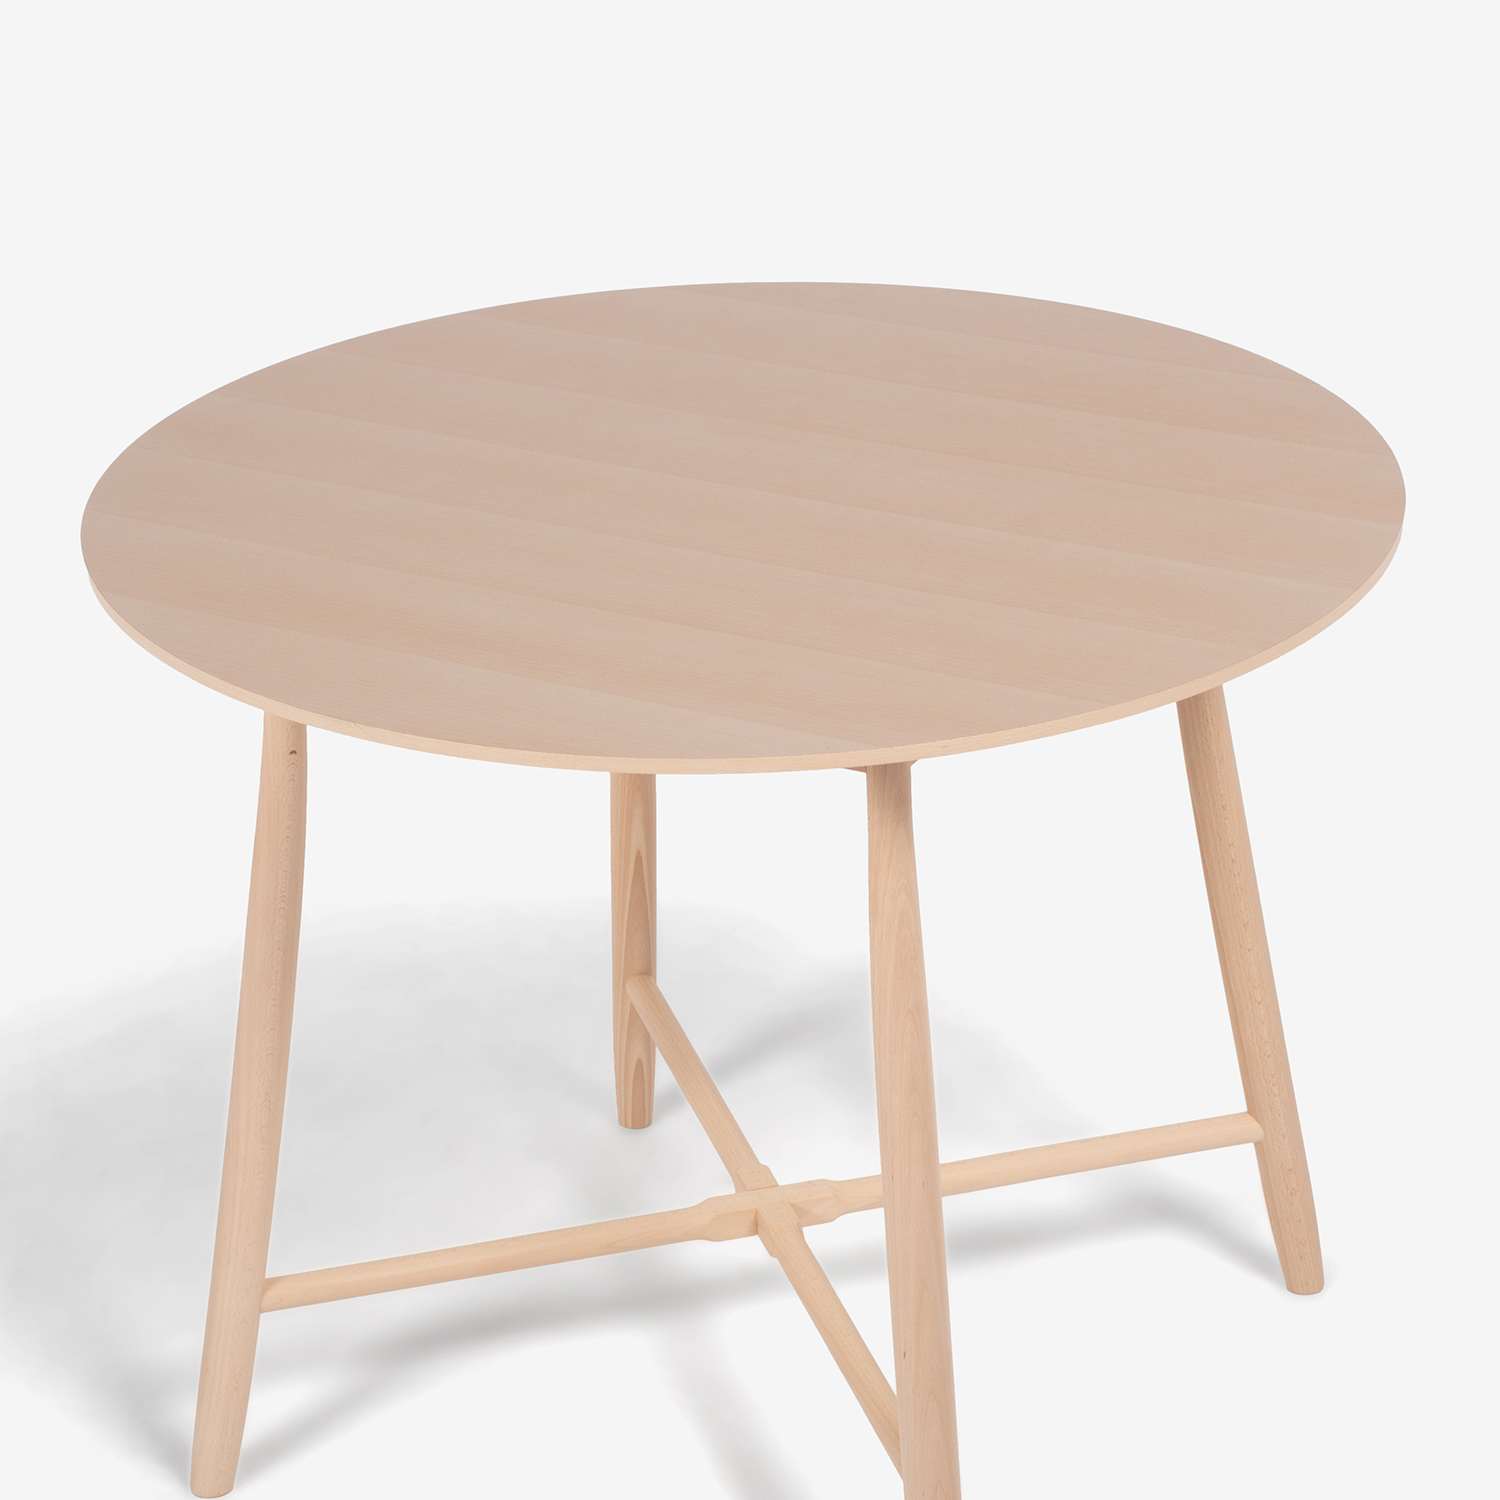 秋田木工 ダイニングテーブル「209EB」ブナ材 白木塗装